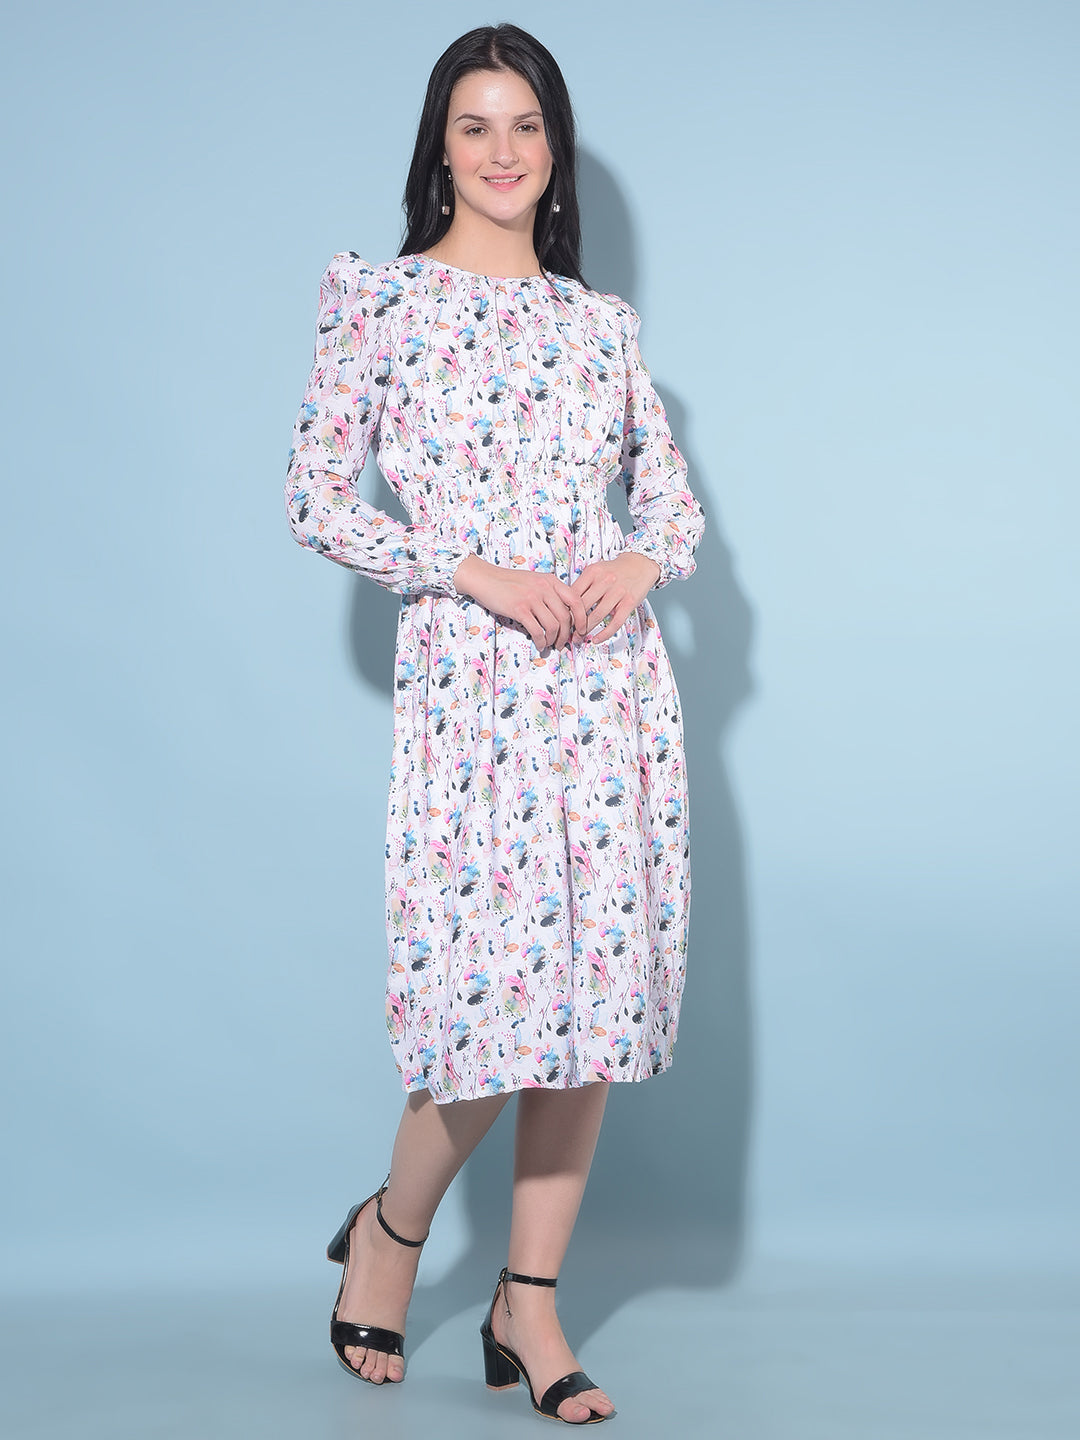 Multi Color Floral Print A-Line Dress-Women Dresses-Crimsoune Club